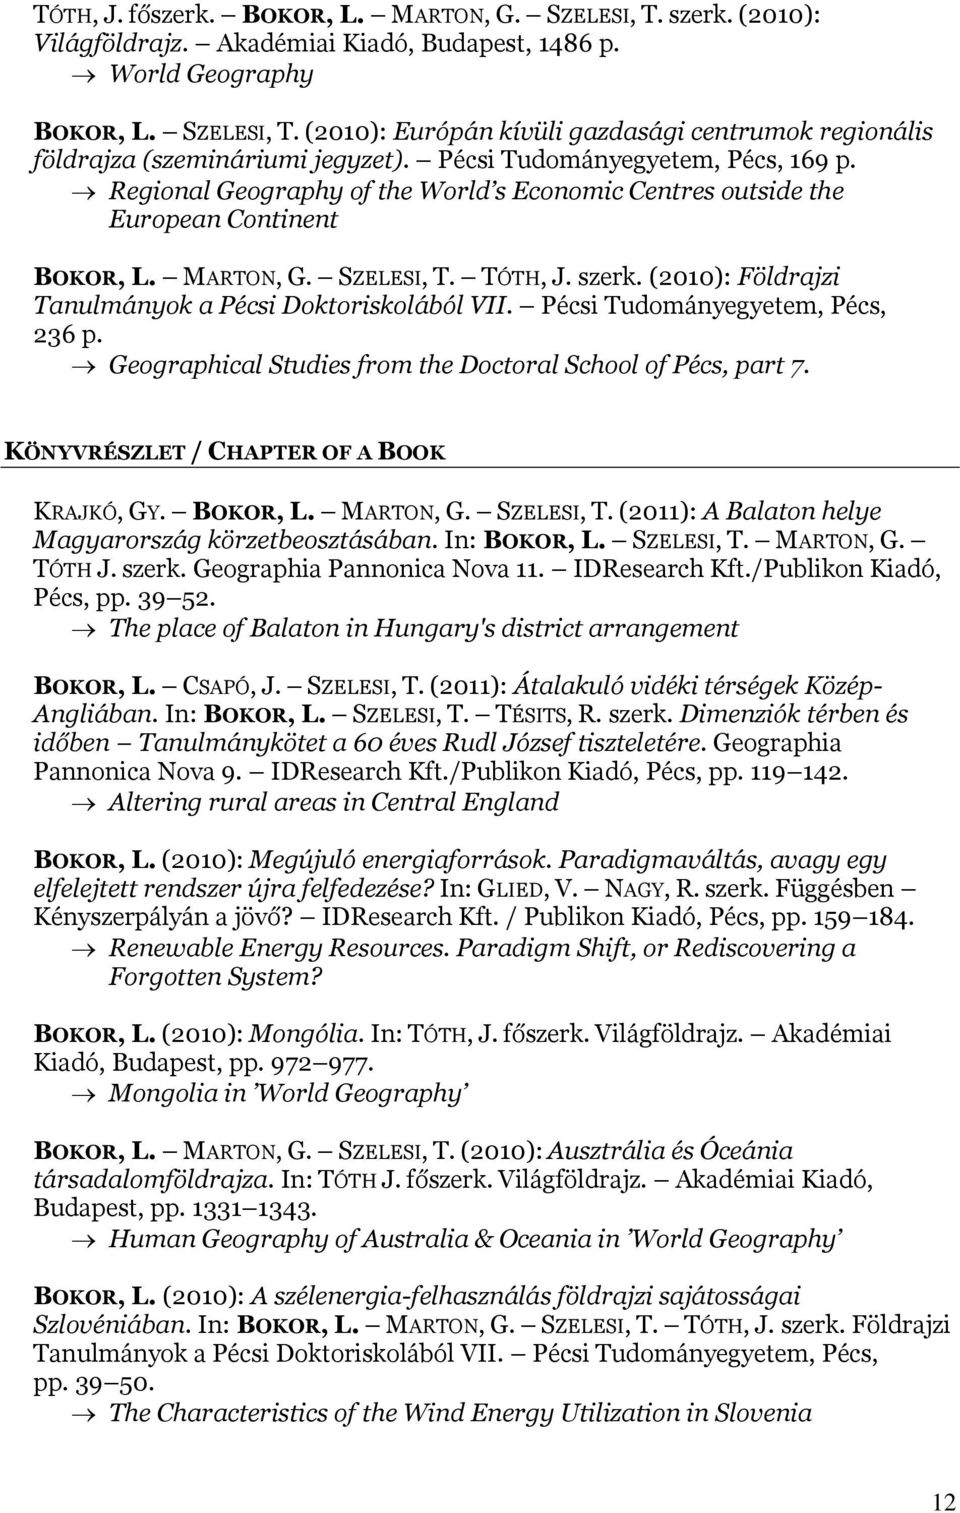 (2010): Földrajzi Tanulmányok a Pécsi Doktoriskolából VII. Pécsi Tudományegyetem, Pécs, 236 p. Geographical Studies from the Doctoral School of Pécs, part 7.